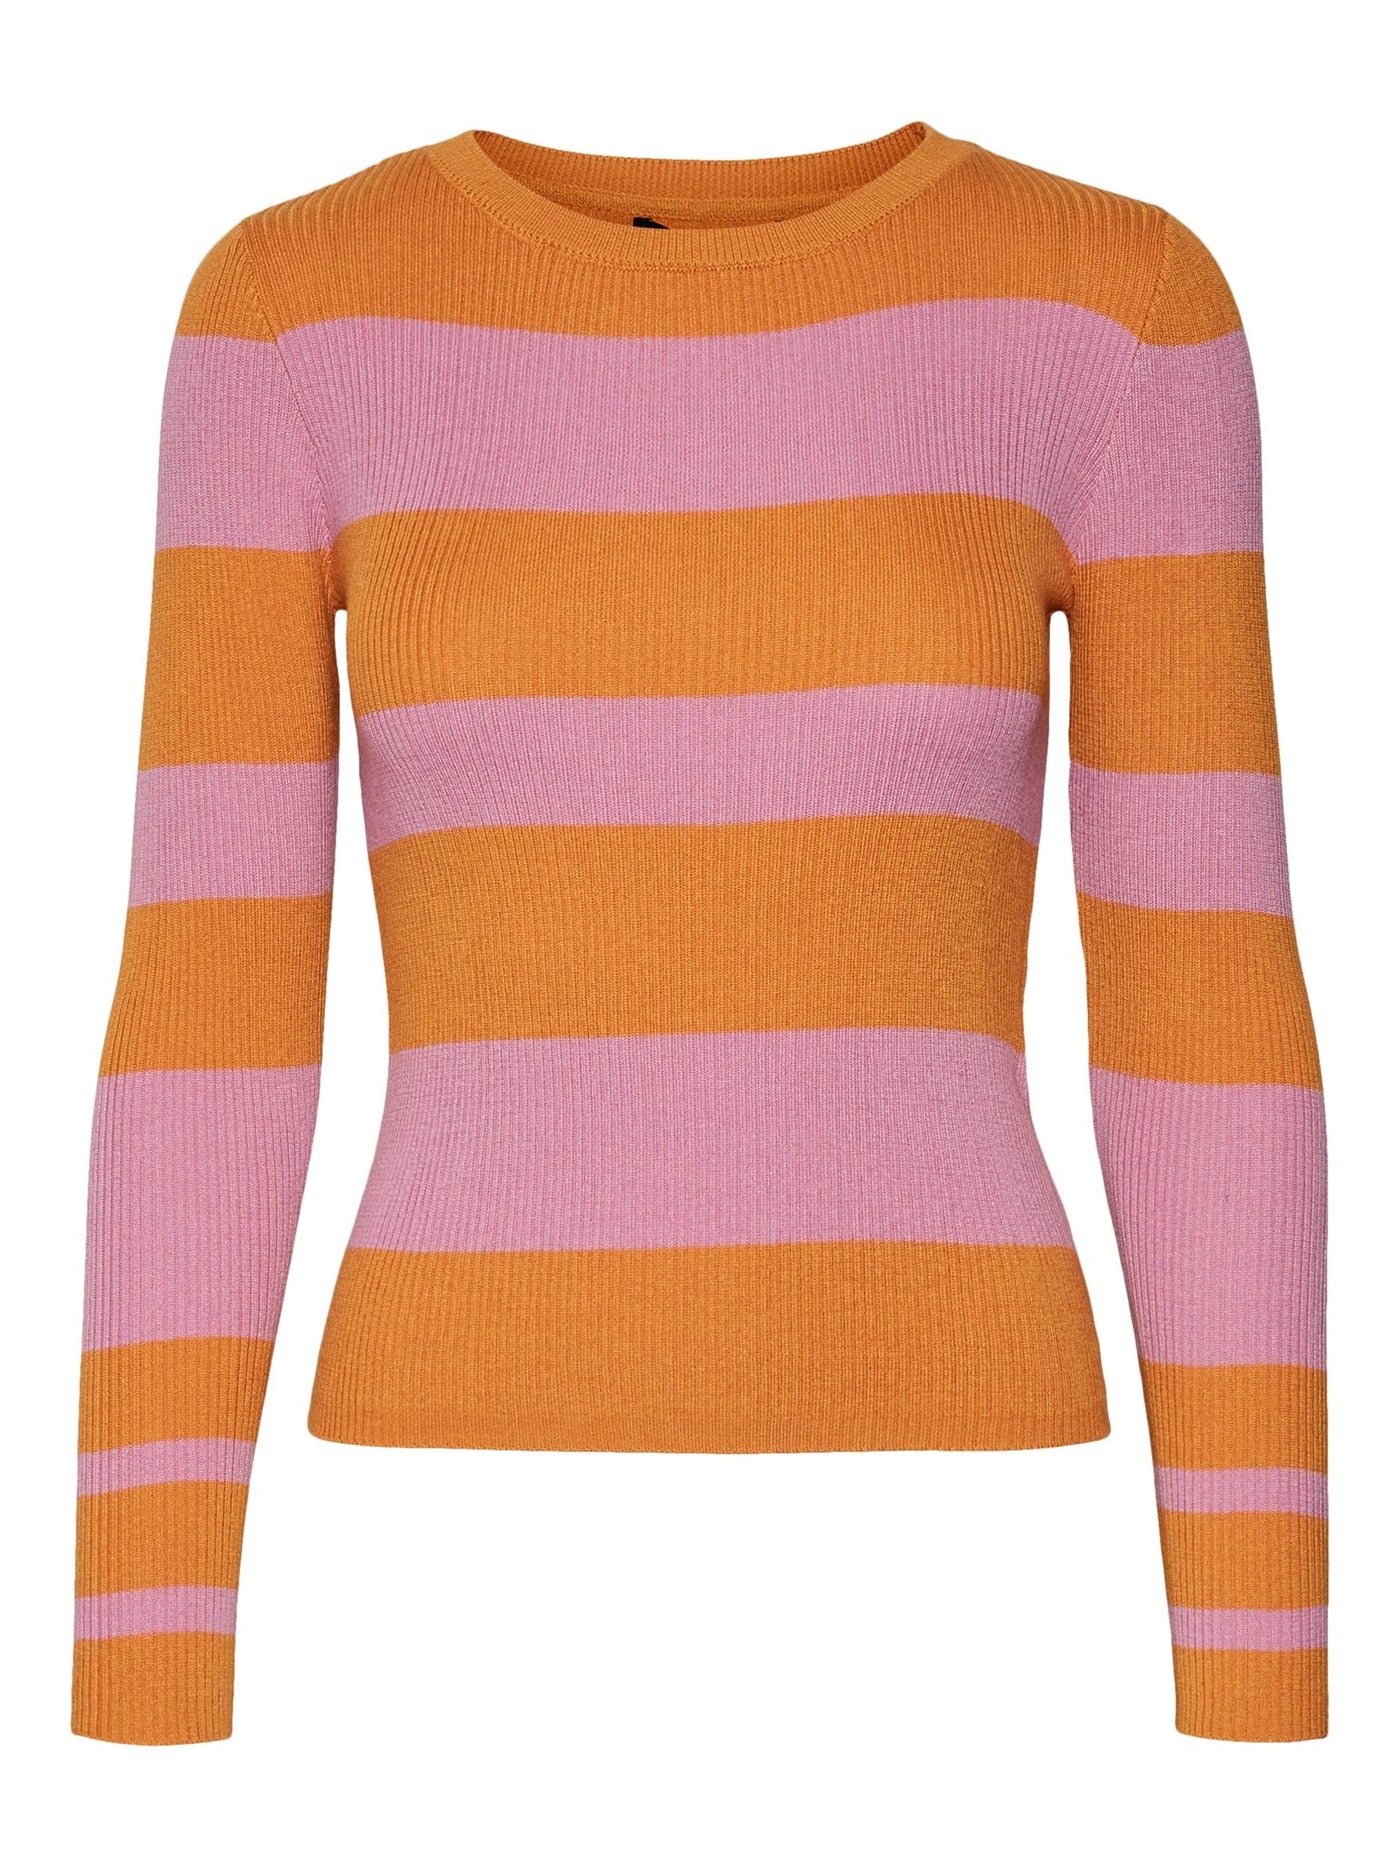 Alva Stripe Pullover - Nugget - Vero Moda - Orange 5